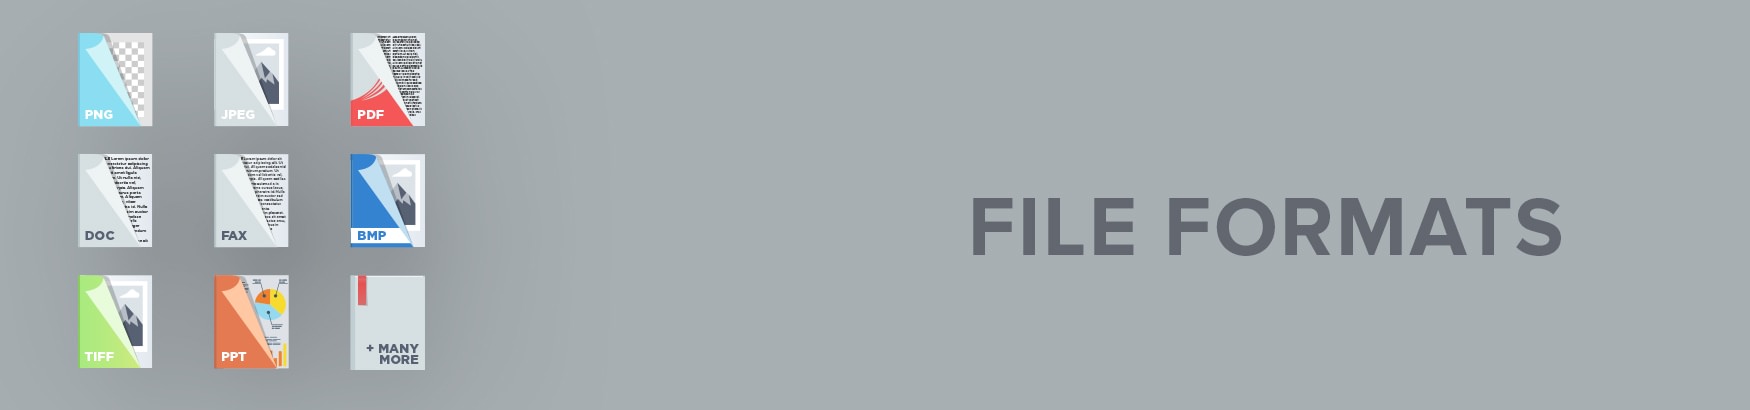 File Formats Banner